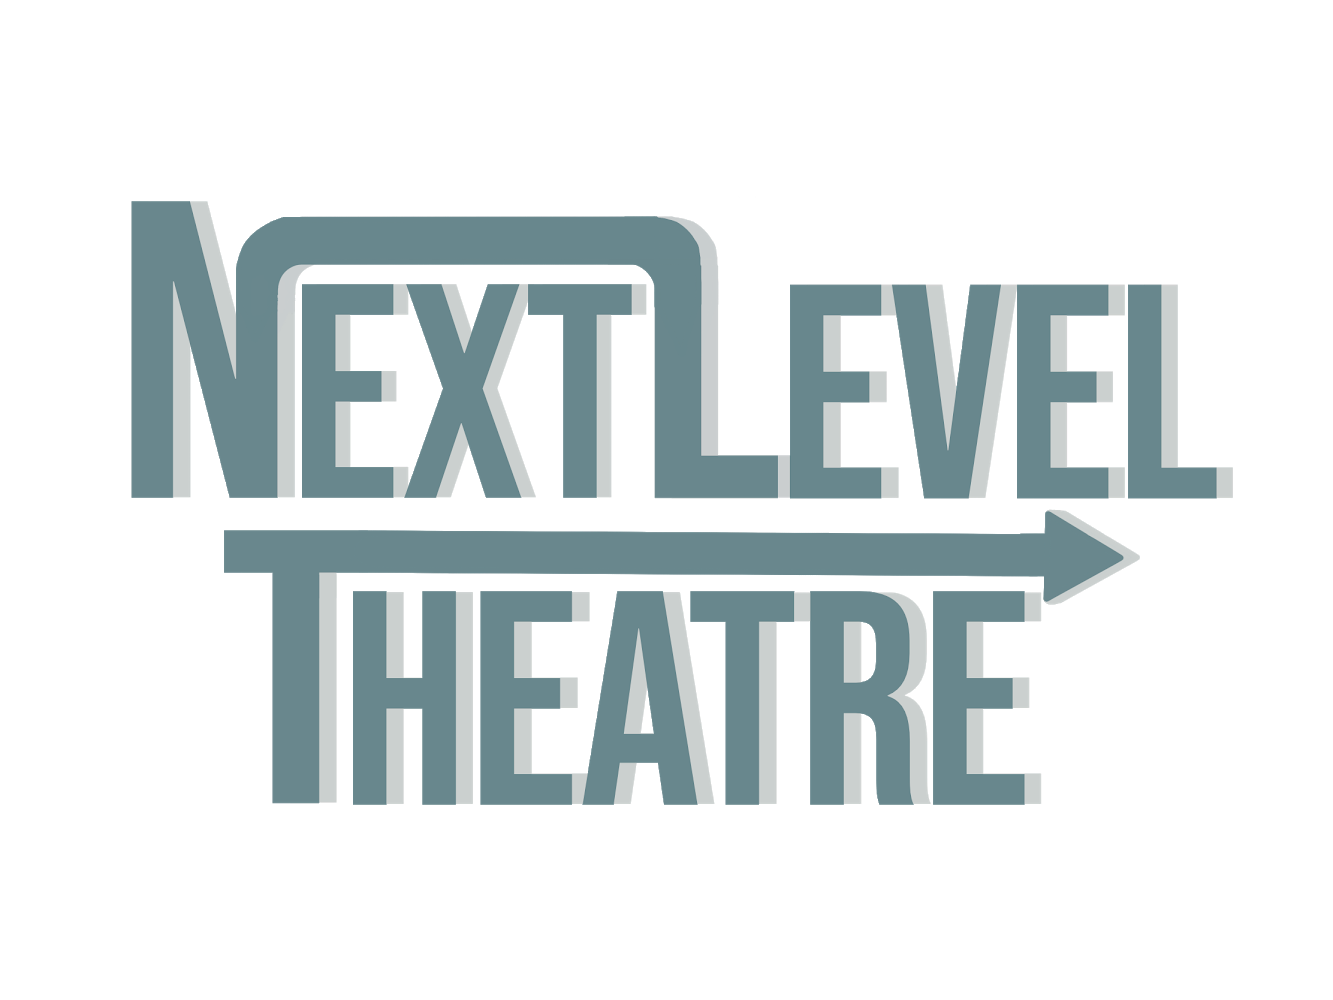 Next Level Theatre